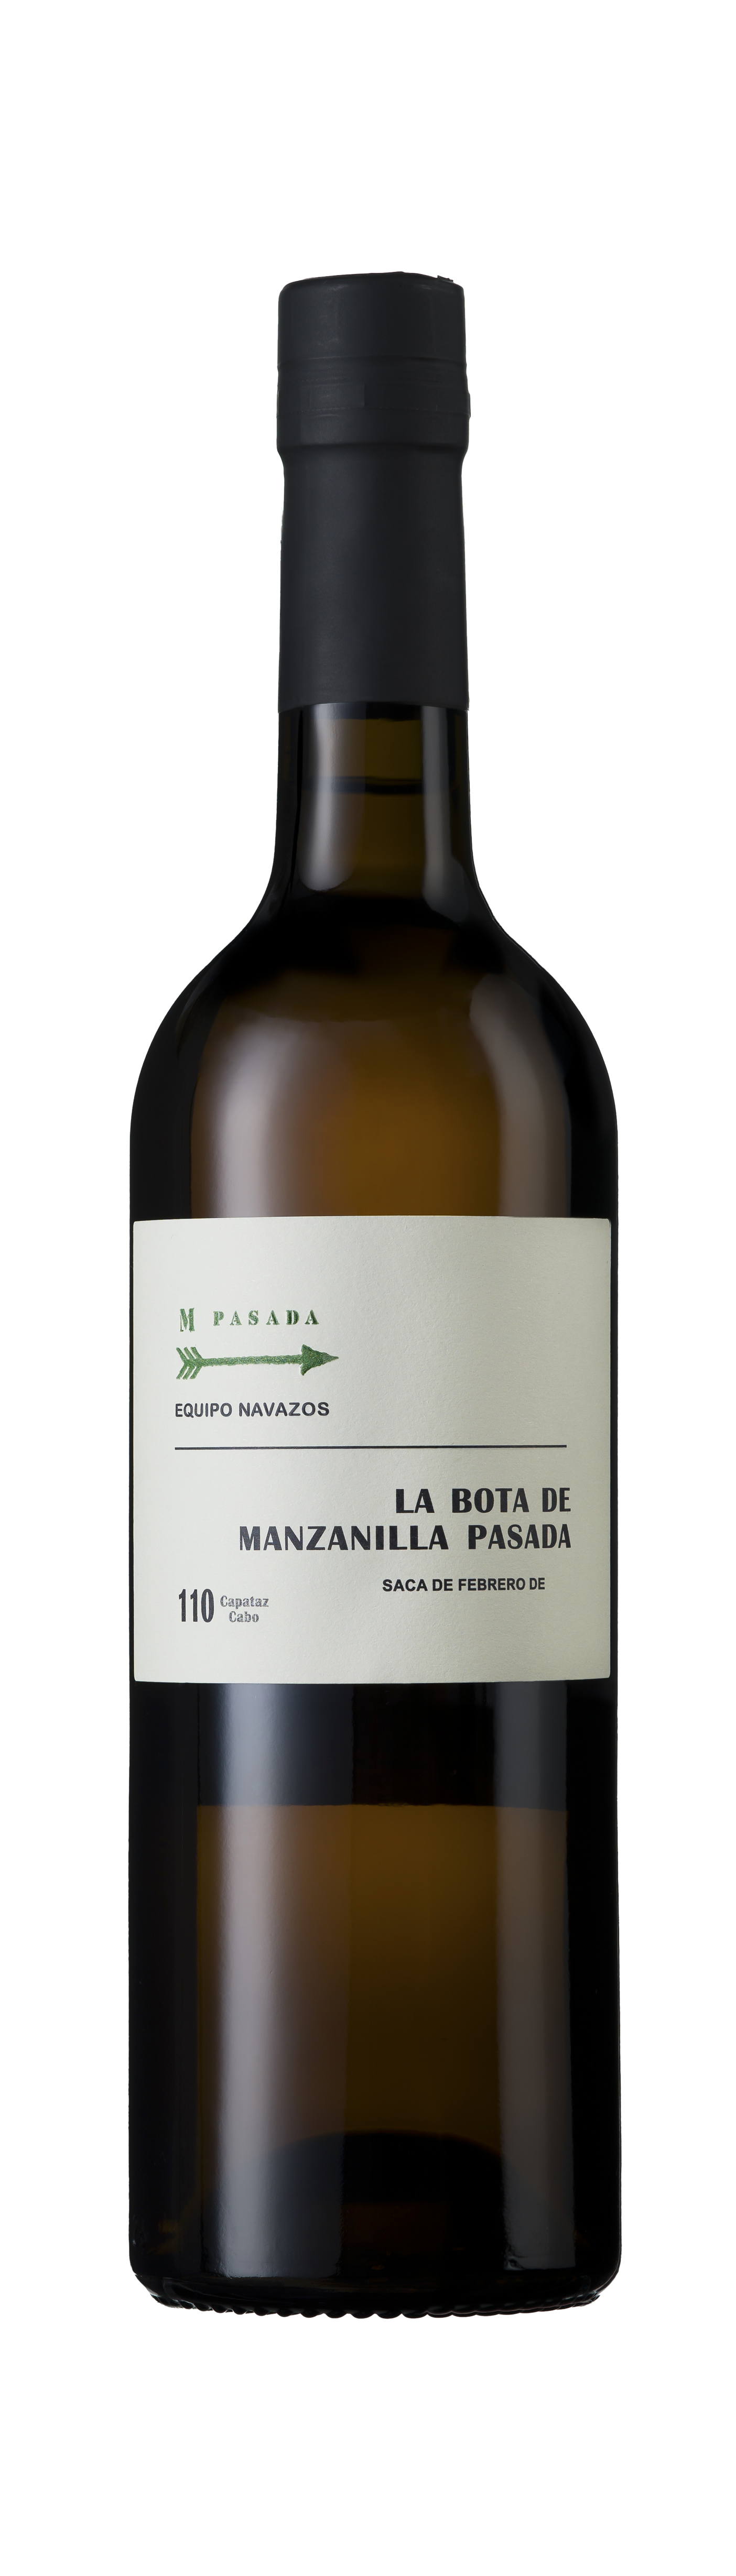 Bottle shot - Equipo Navazos, La Bota No 110 Manzanilla Pasada 